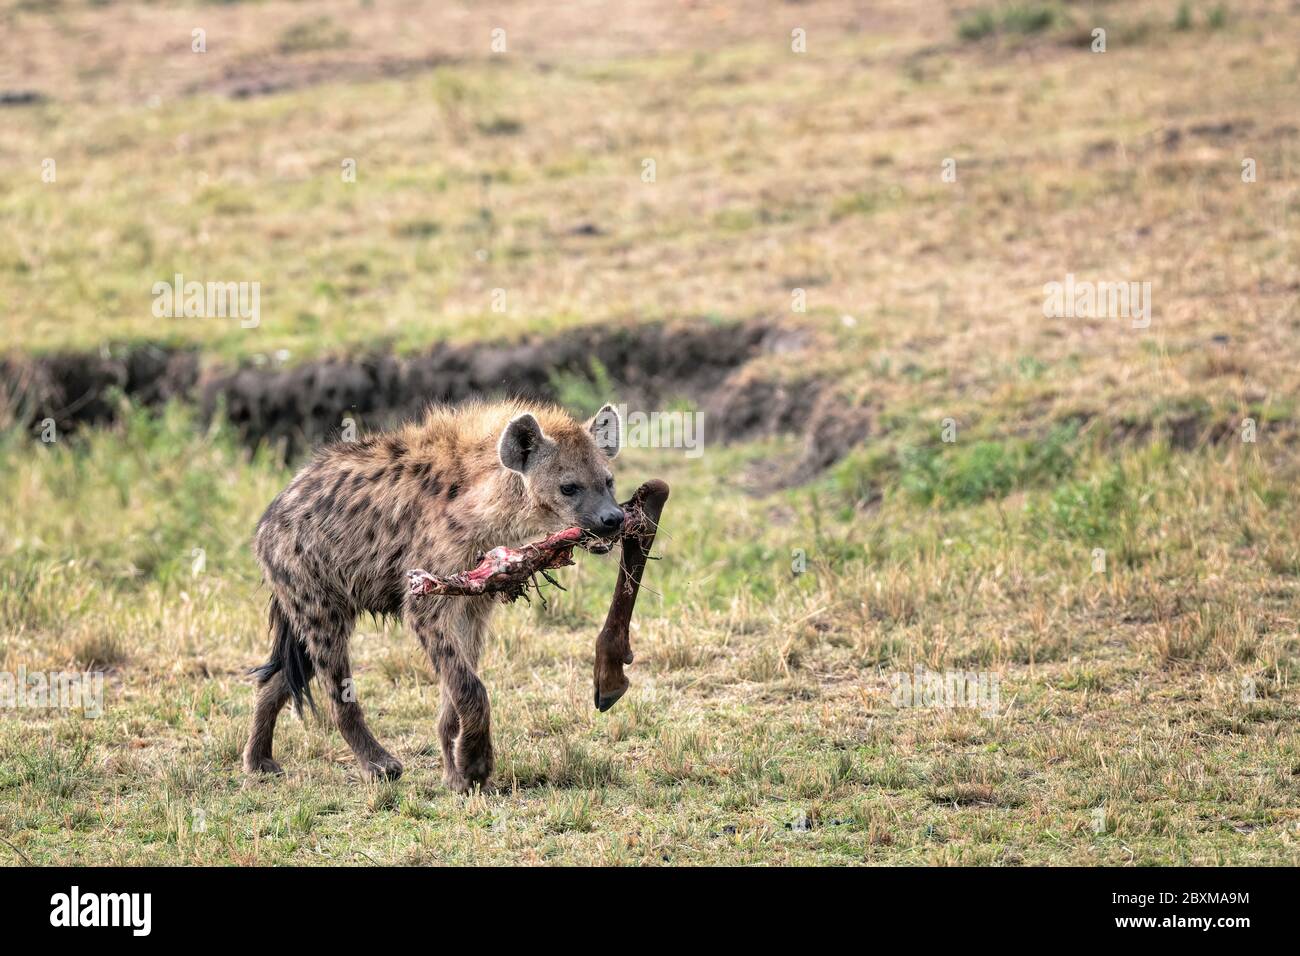 Hyena caminando por la sabana con un hueso de la pierna en la boca. Imagen tomada en el Masai Mara, Kenia. Foto de stock